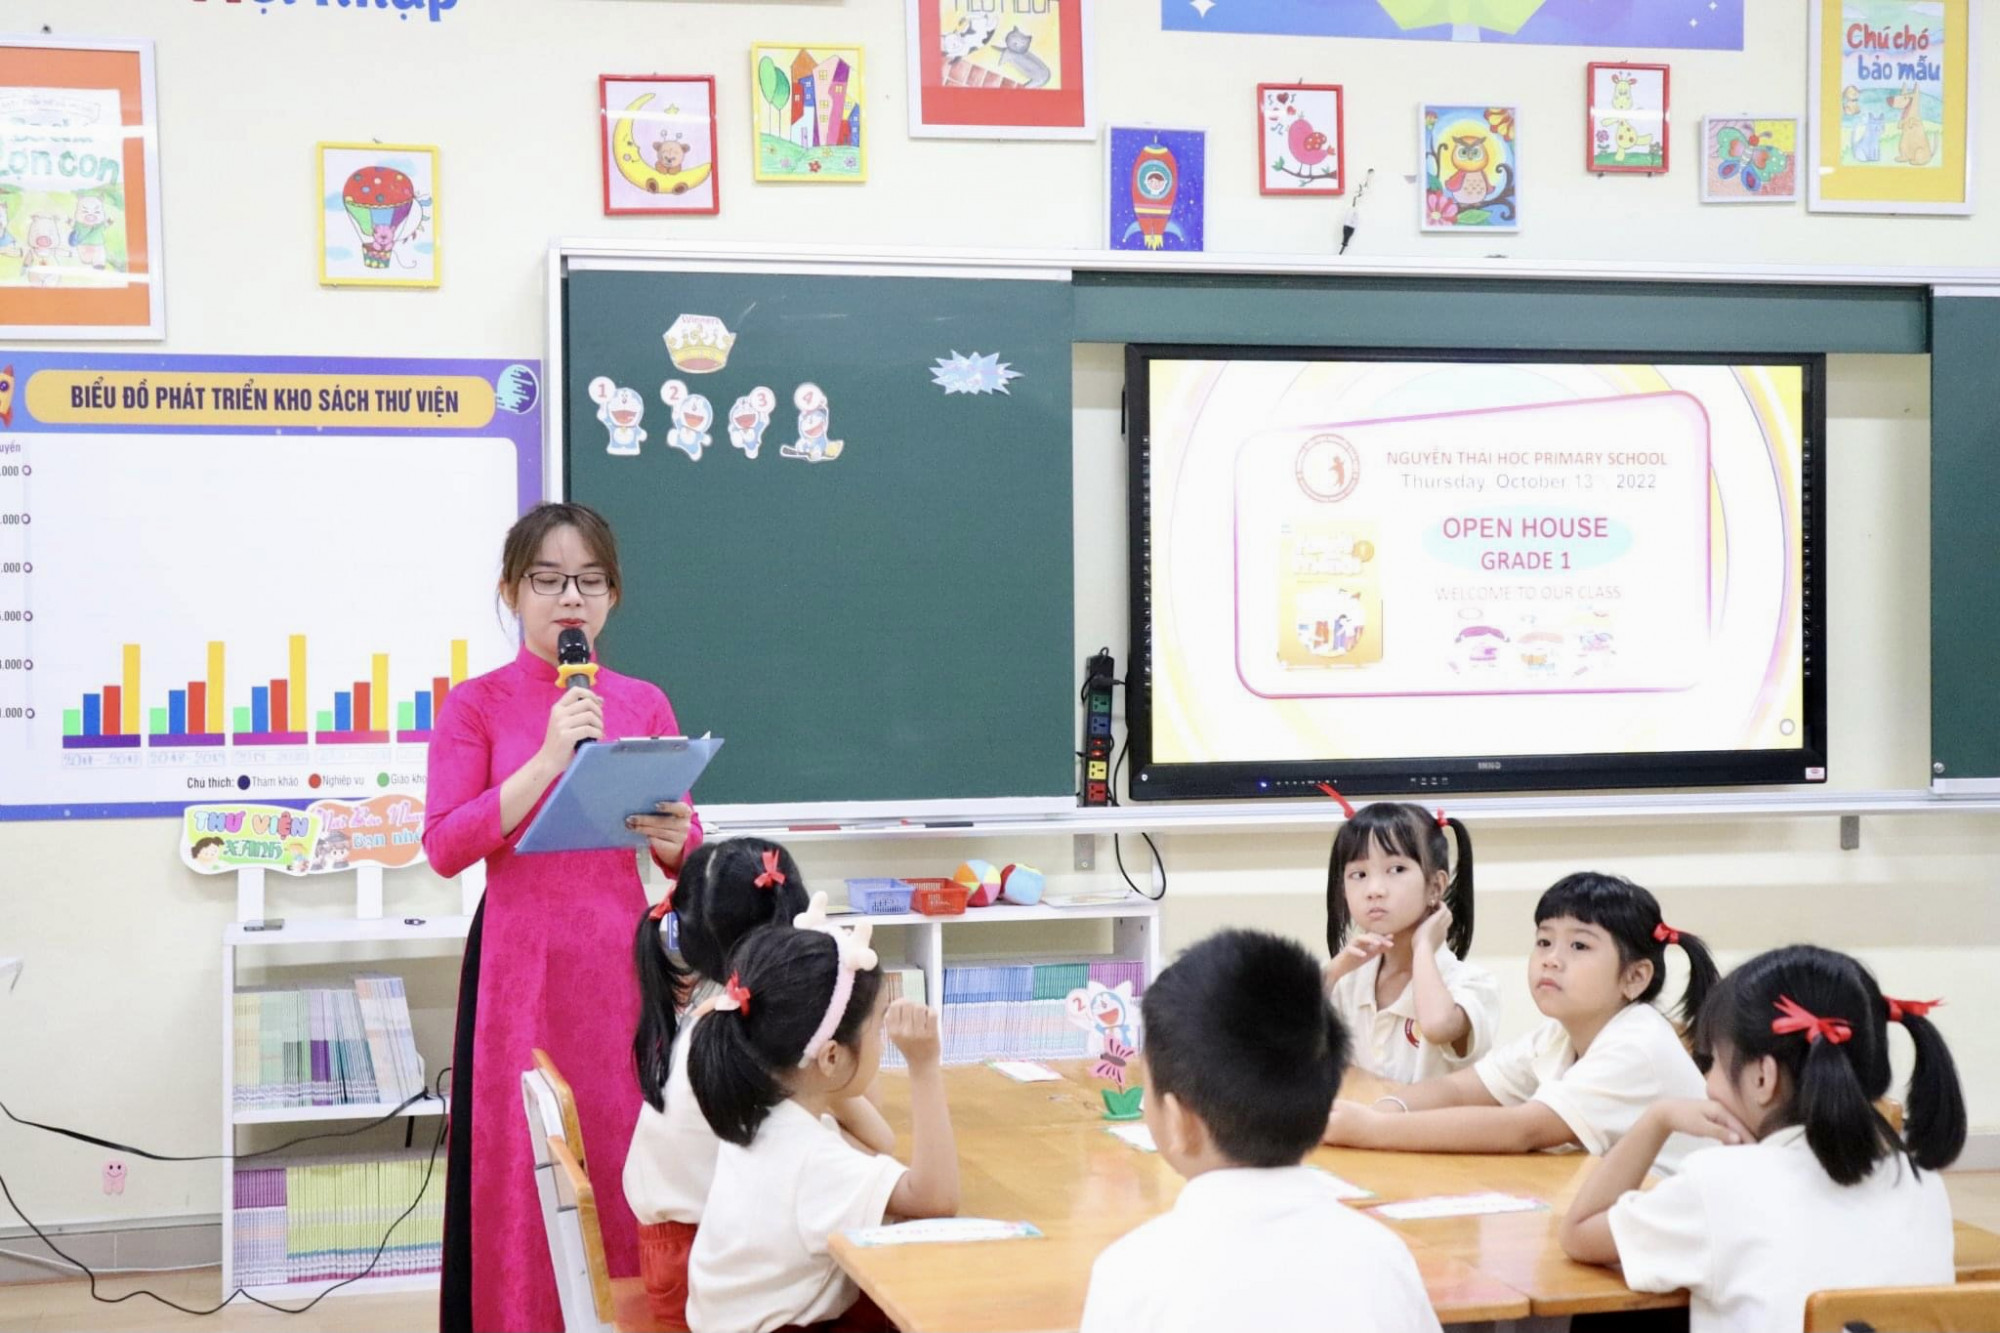 Trường TH Nguyễn Thái Học không triển khai sổ liên lạc điện tử, giúp phụ huynh tiết kiệm gần 200.000 đồng/năm